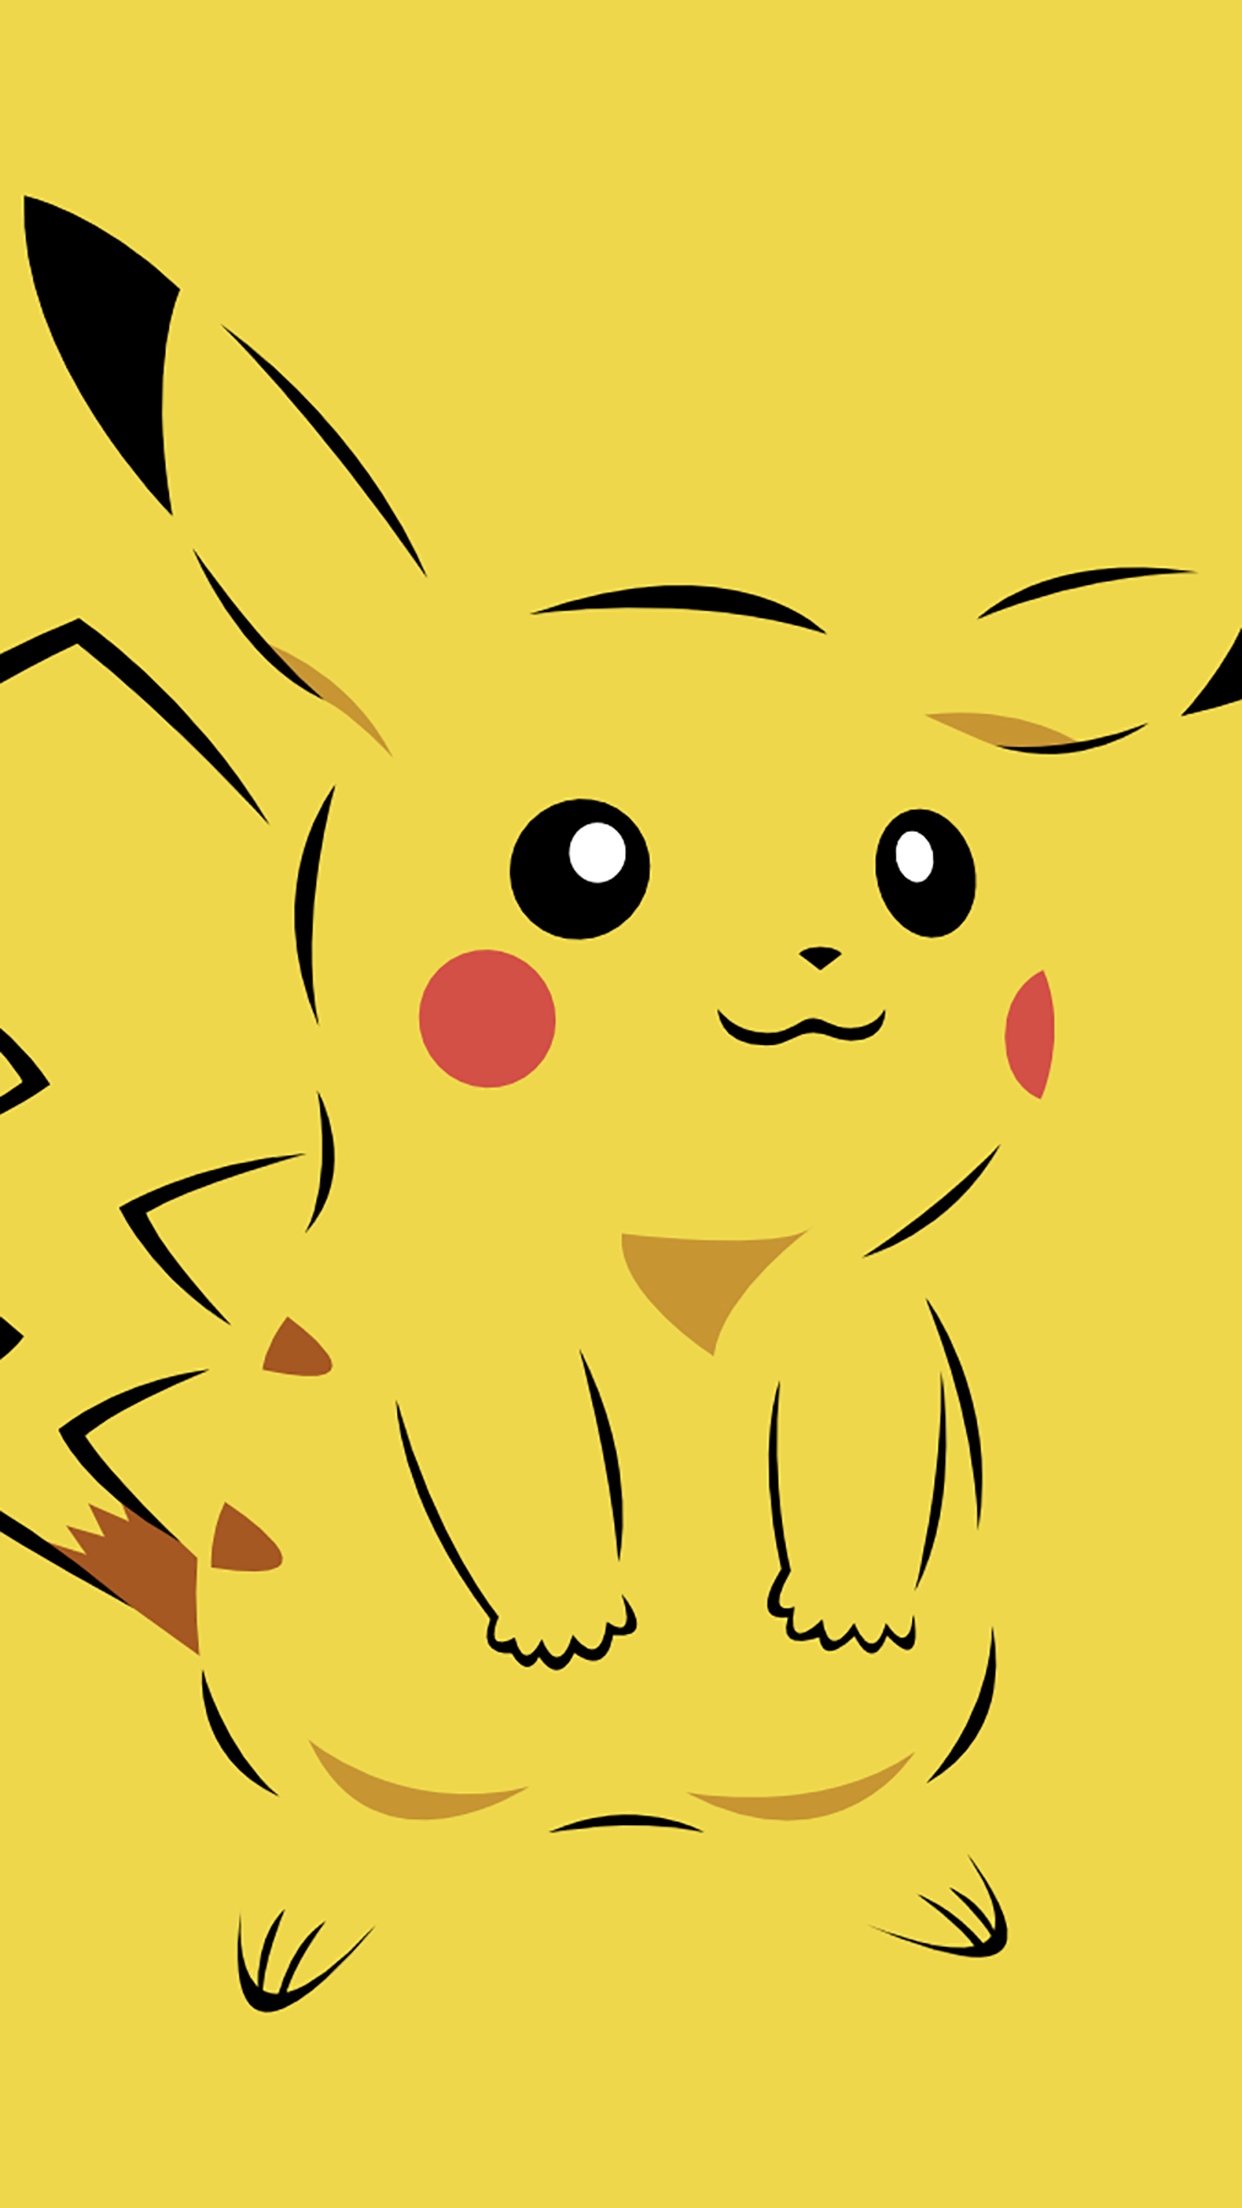 wallpaper di pikachu,giallo,cartone animato,testa,illustrazione,linea